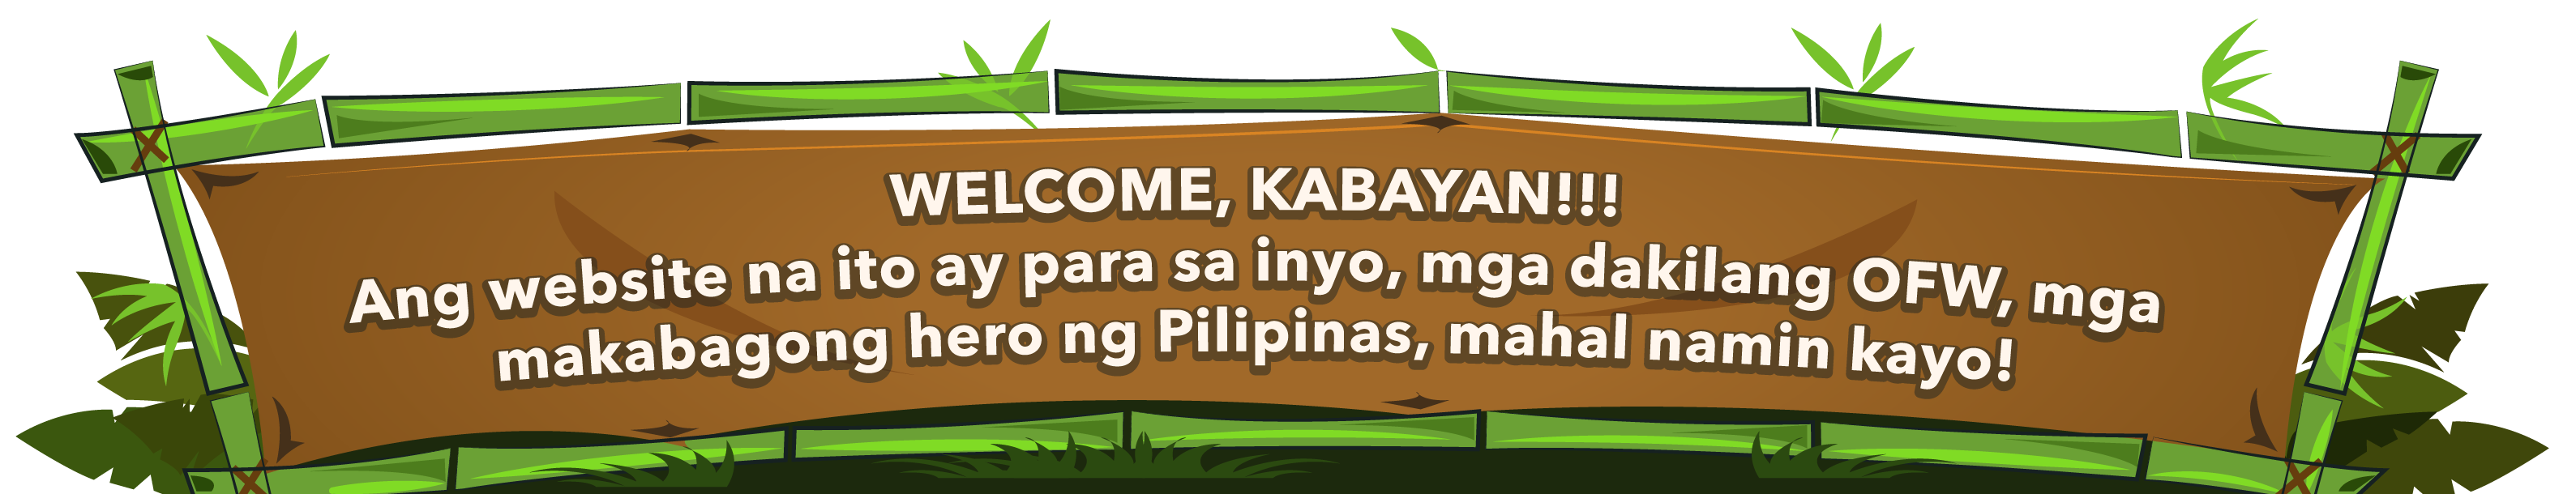 Welcome, Kabayan! Ang website na ito ay para sa inyo, mga dakilang OFW, mga makabagong hero ng Pilipinas, mahal namin kayo!